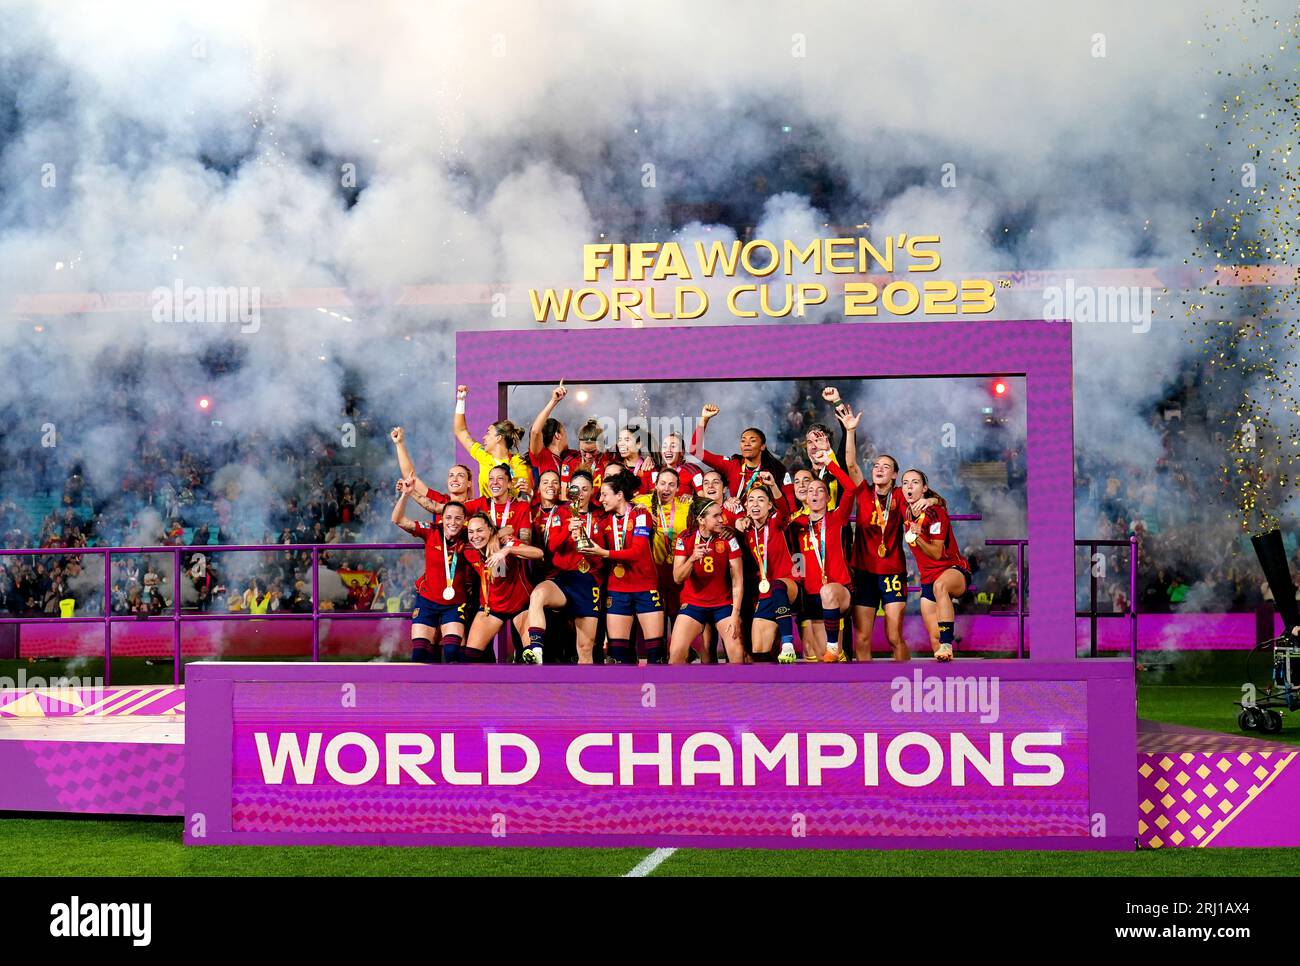 Die spanischen Spieler feiern, nachdem sie das Endspiel der FIFA Frauen-Weltmeisterschaft im Stadion Australien, Sydney, gewonnen haben. Bilddatum: Sonntag, 20. August 2023. Stockfoto